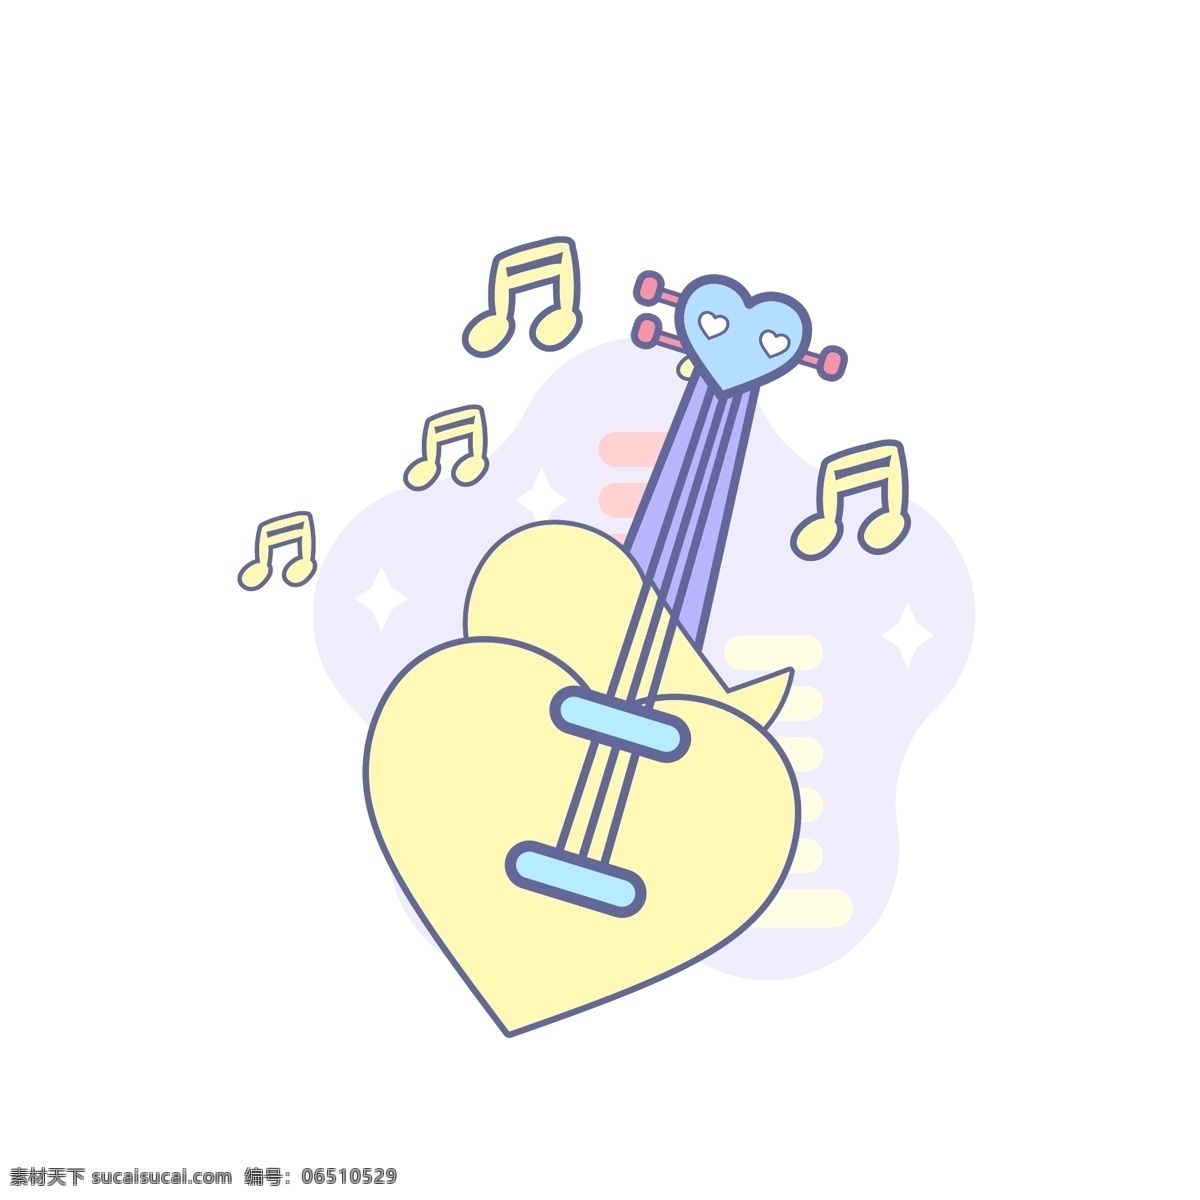 爱心 音乐 音响 乐器 话筒 播放器 图标 元素 吉他 几何 装饰